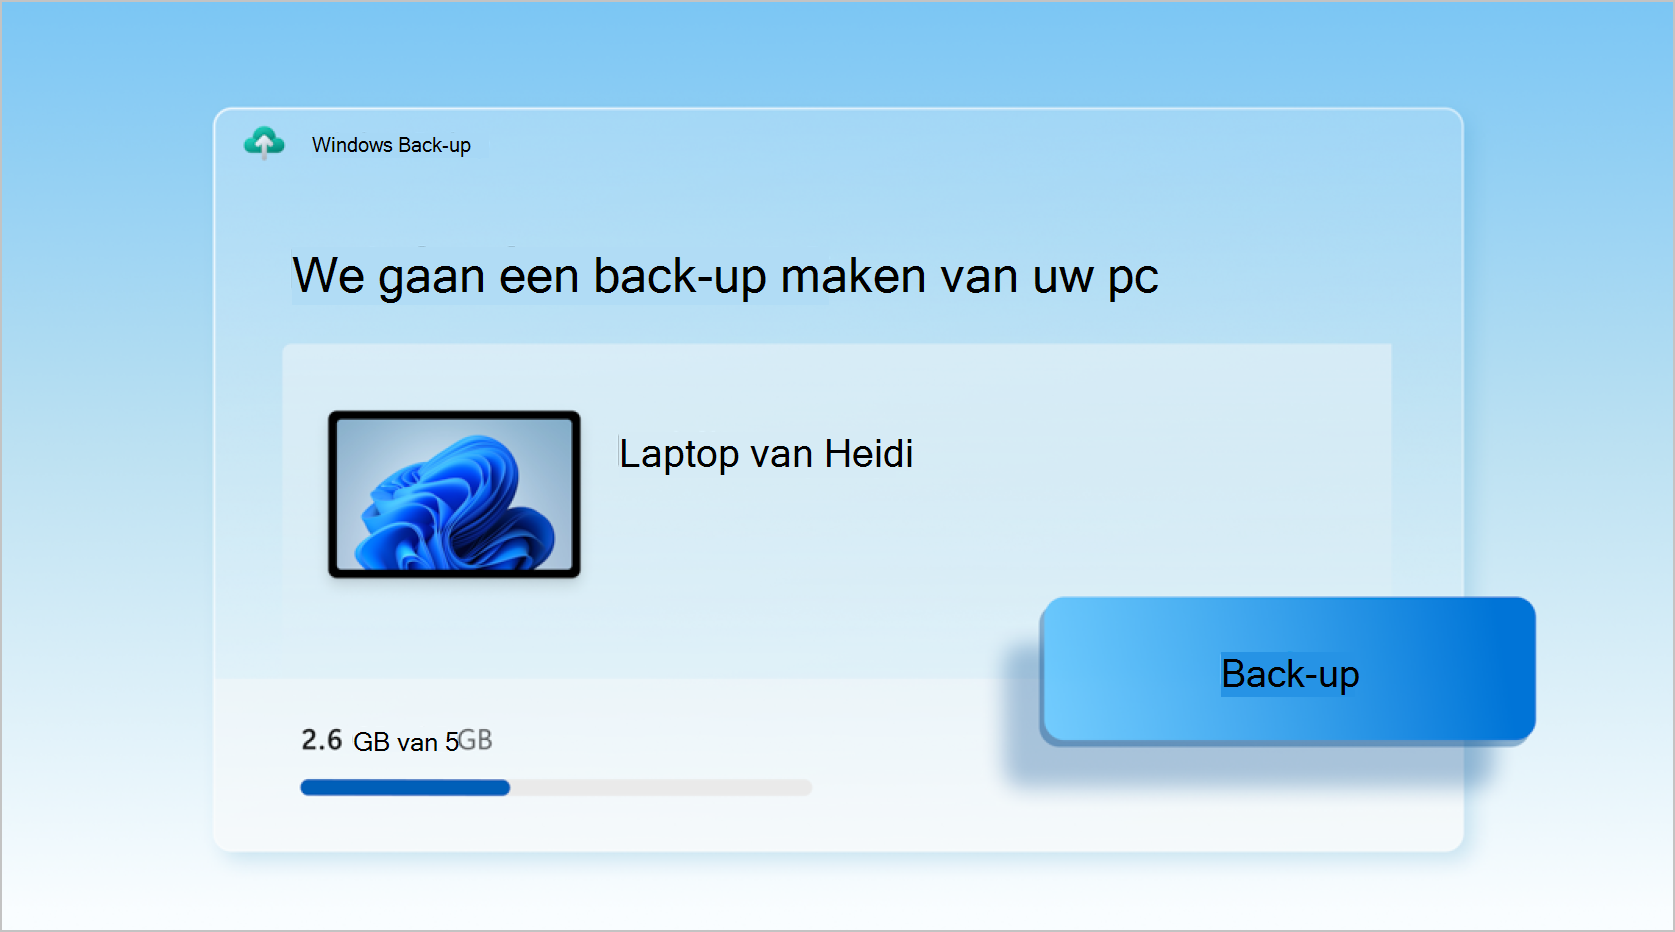 Schermopname van Windows Back-up die wordt gebruikt voor het maken van een back-up van een laptop.